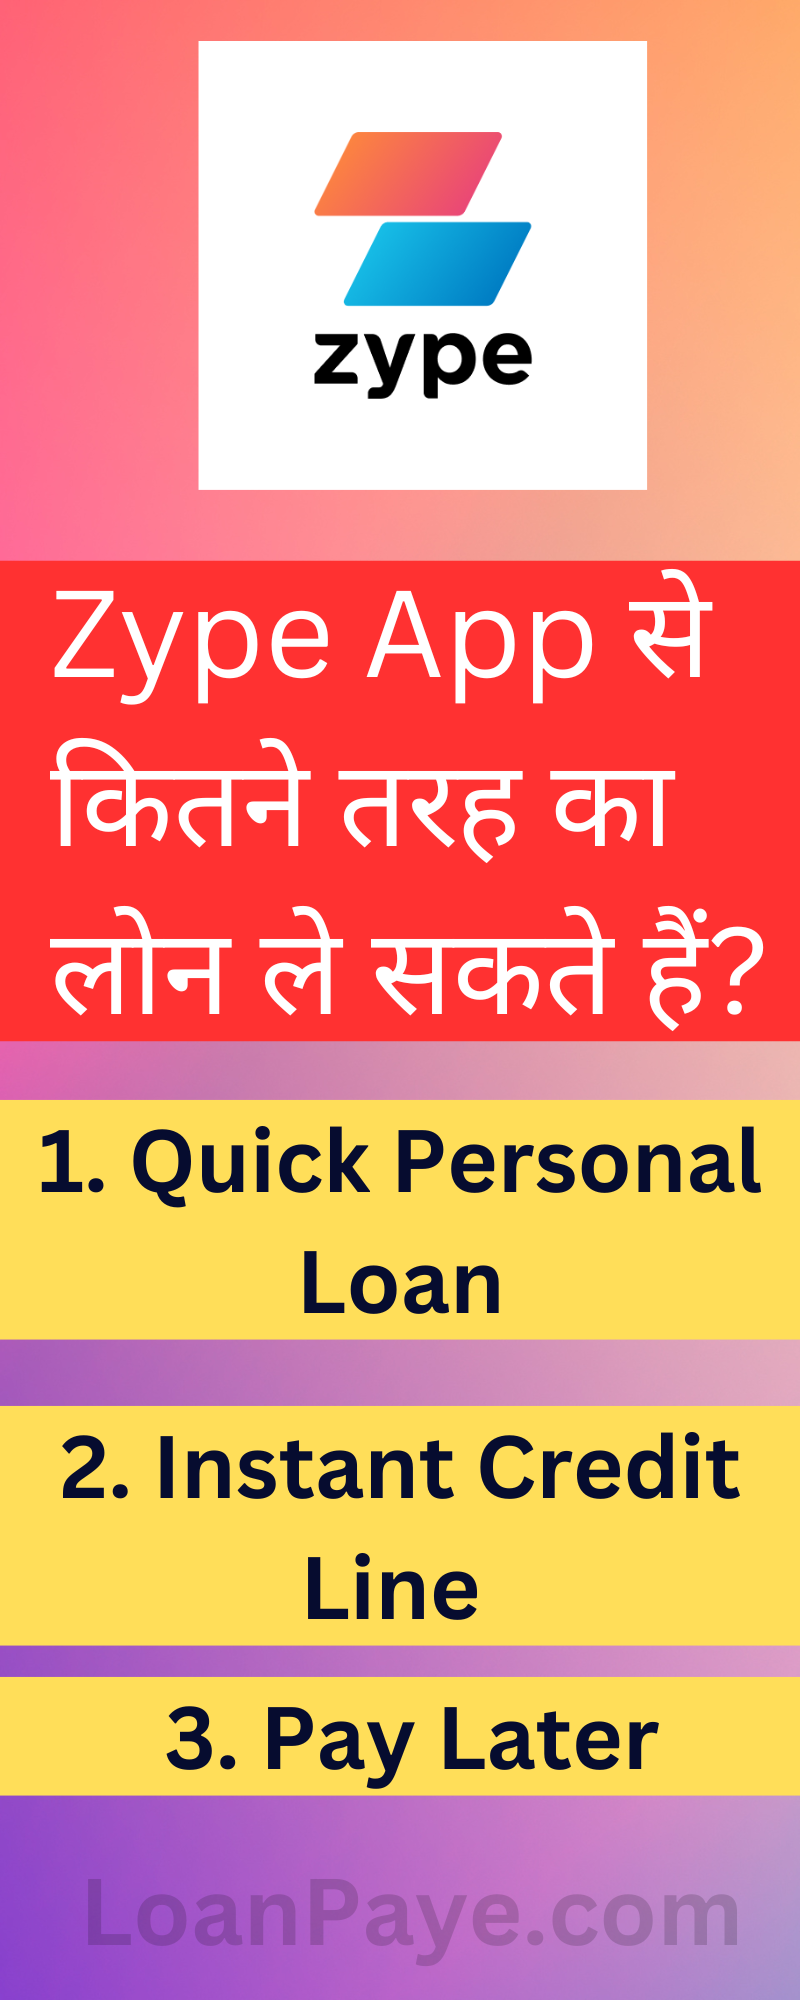 Zype Loan Types